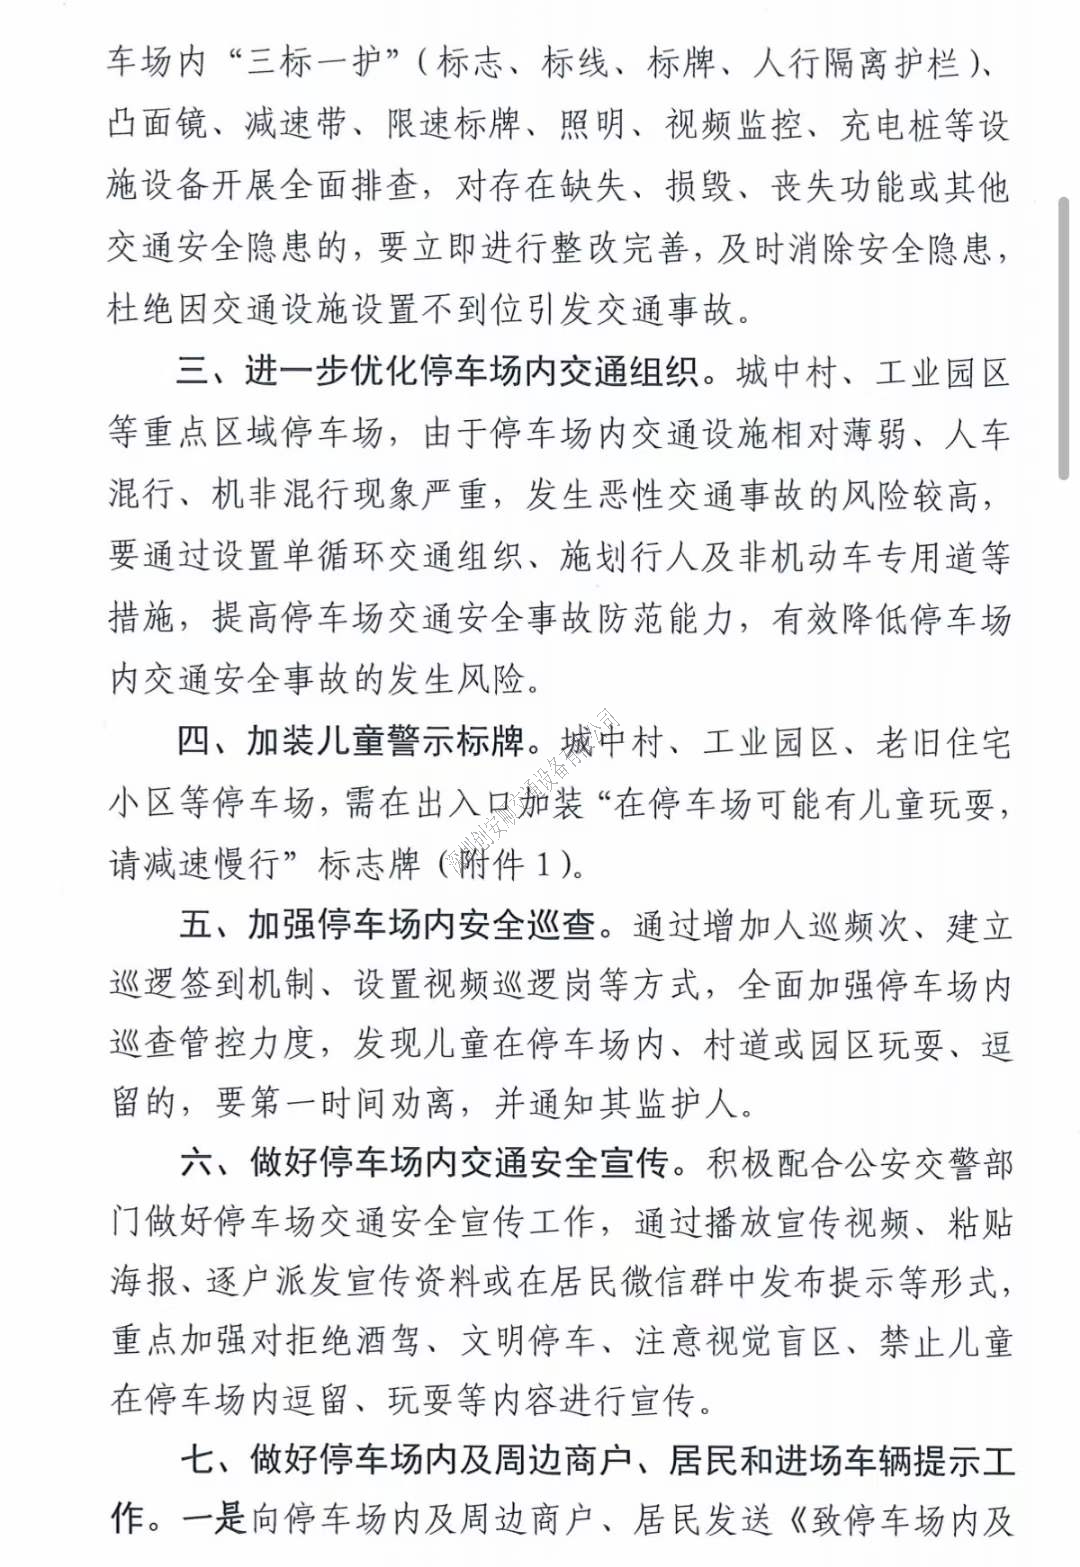 關于深圳加強七一建黨節及暑假期間停車場交通安全管理的通知